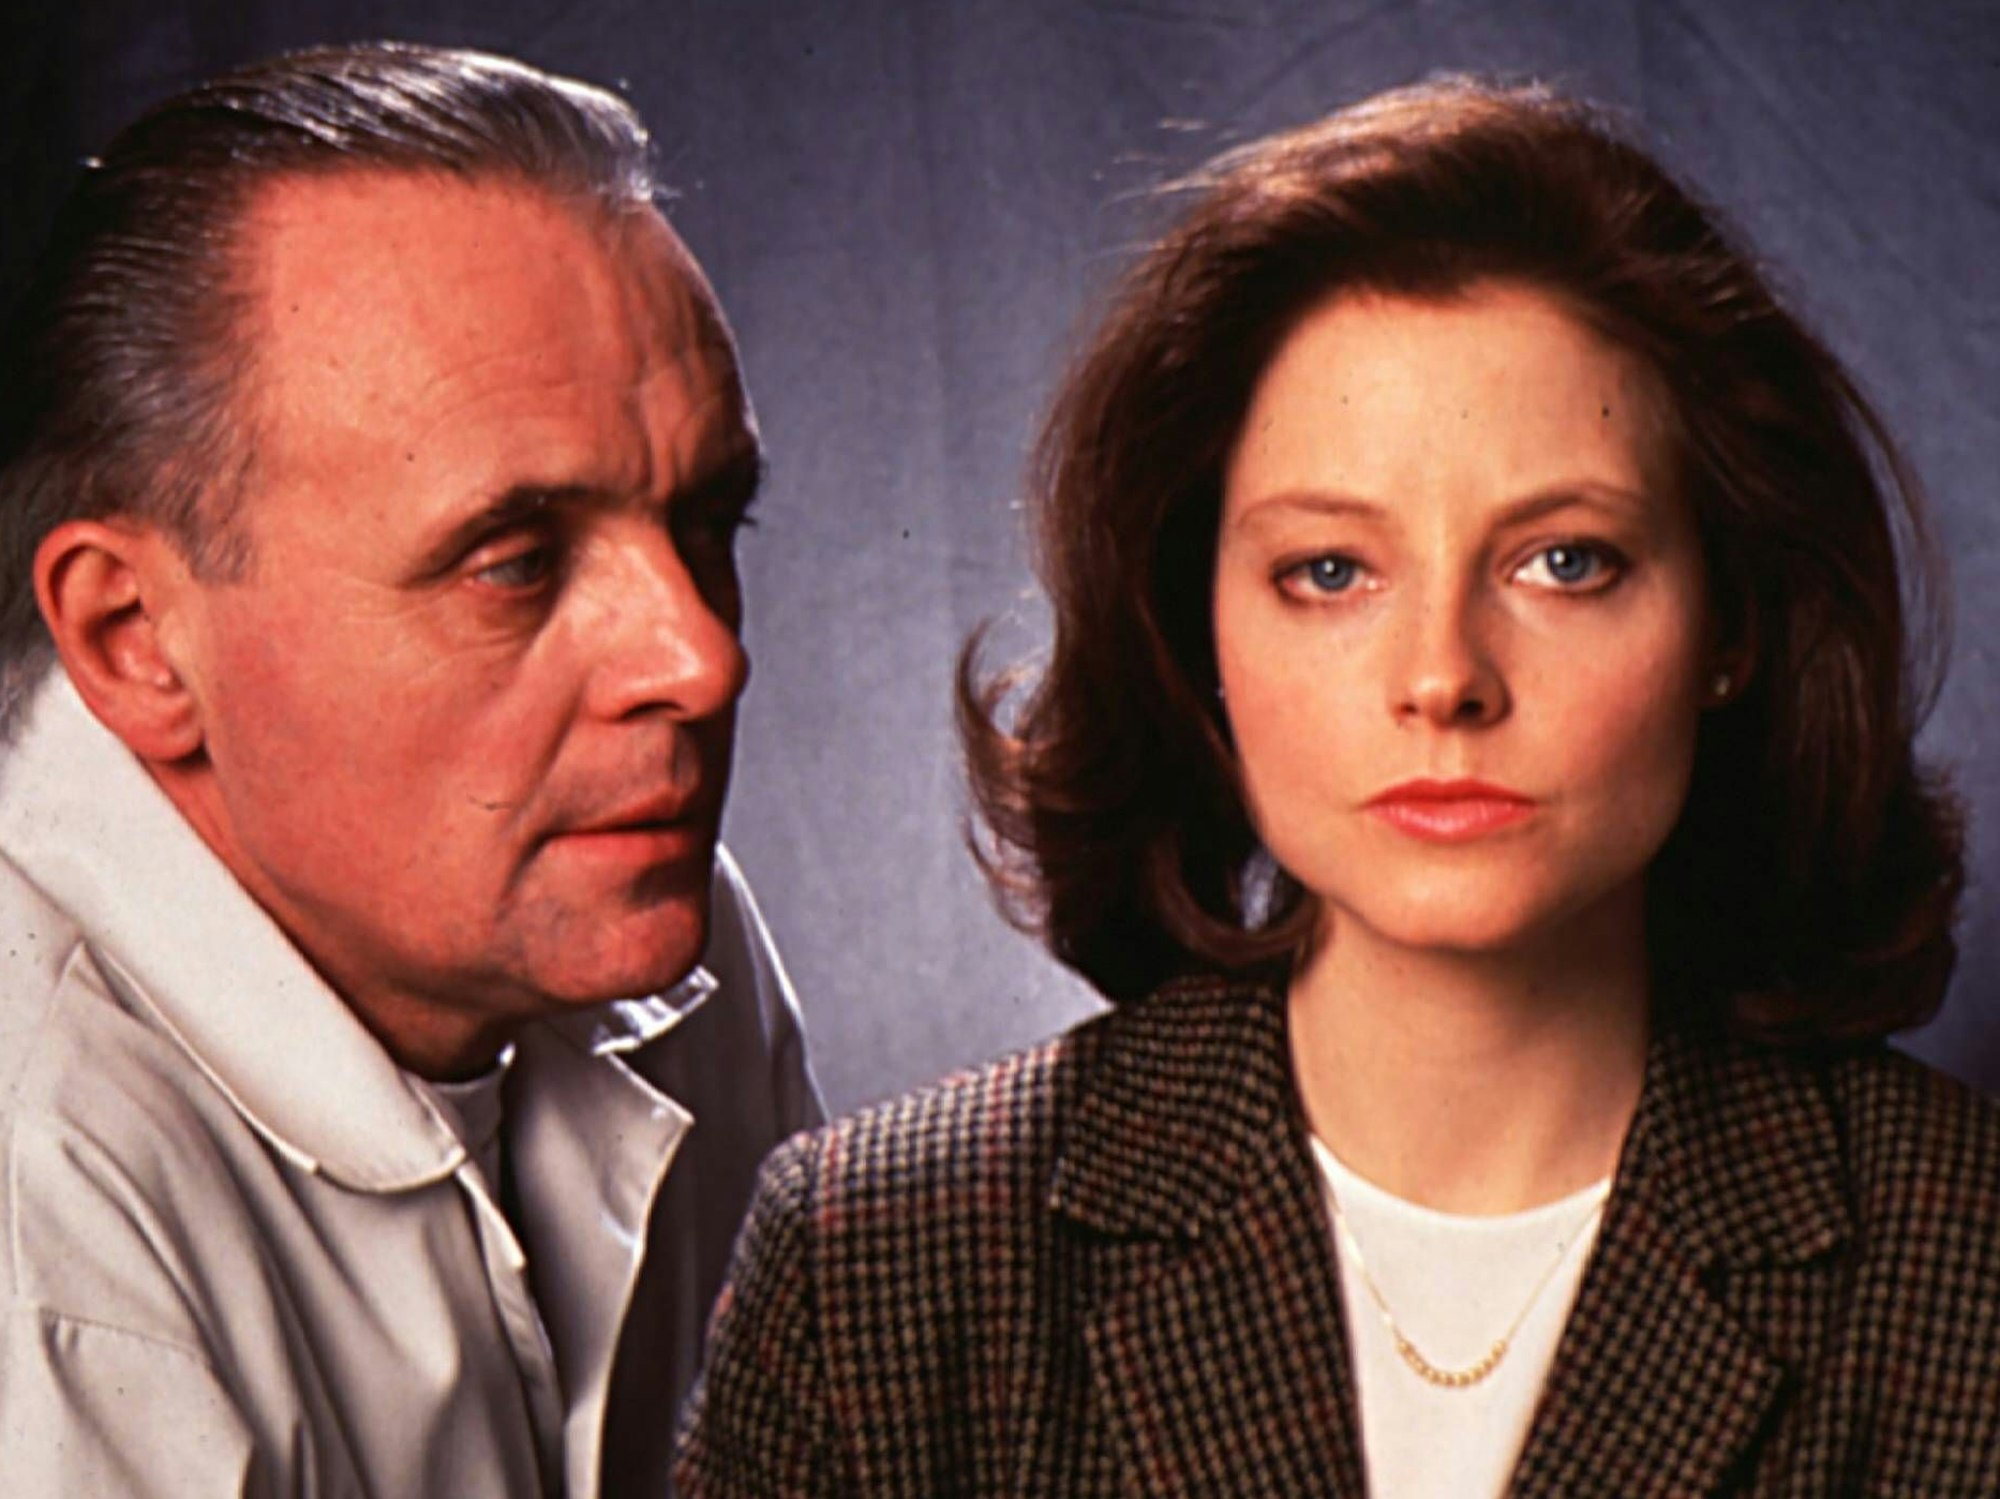 Szene aus "Das Schweigen der Lämmer" (1991) mit Anthony Hopkins und Jodie Foster